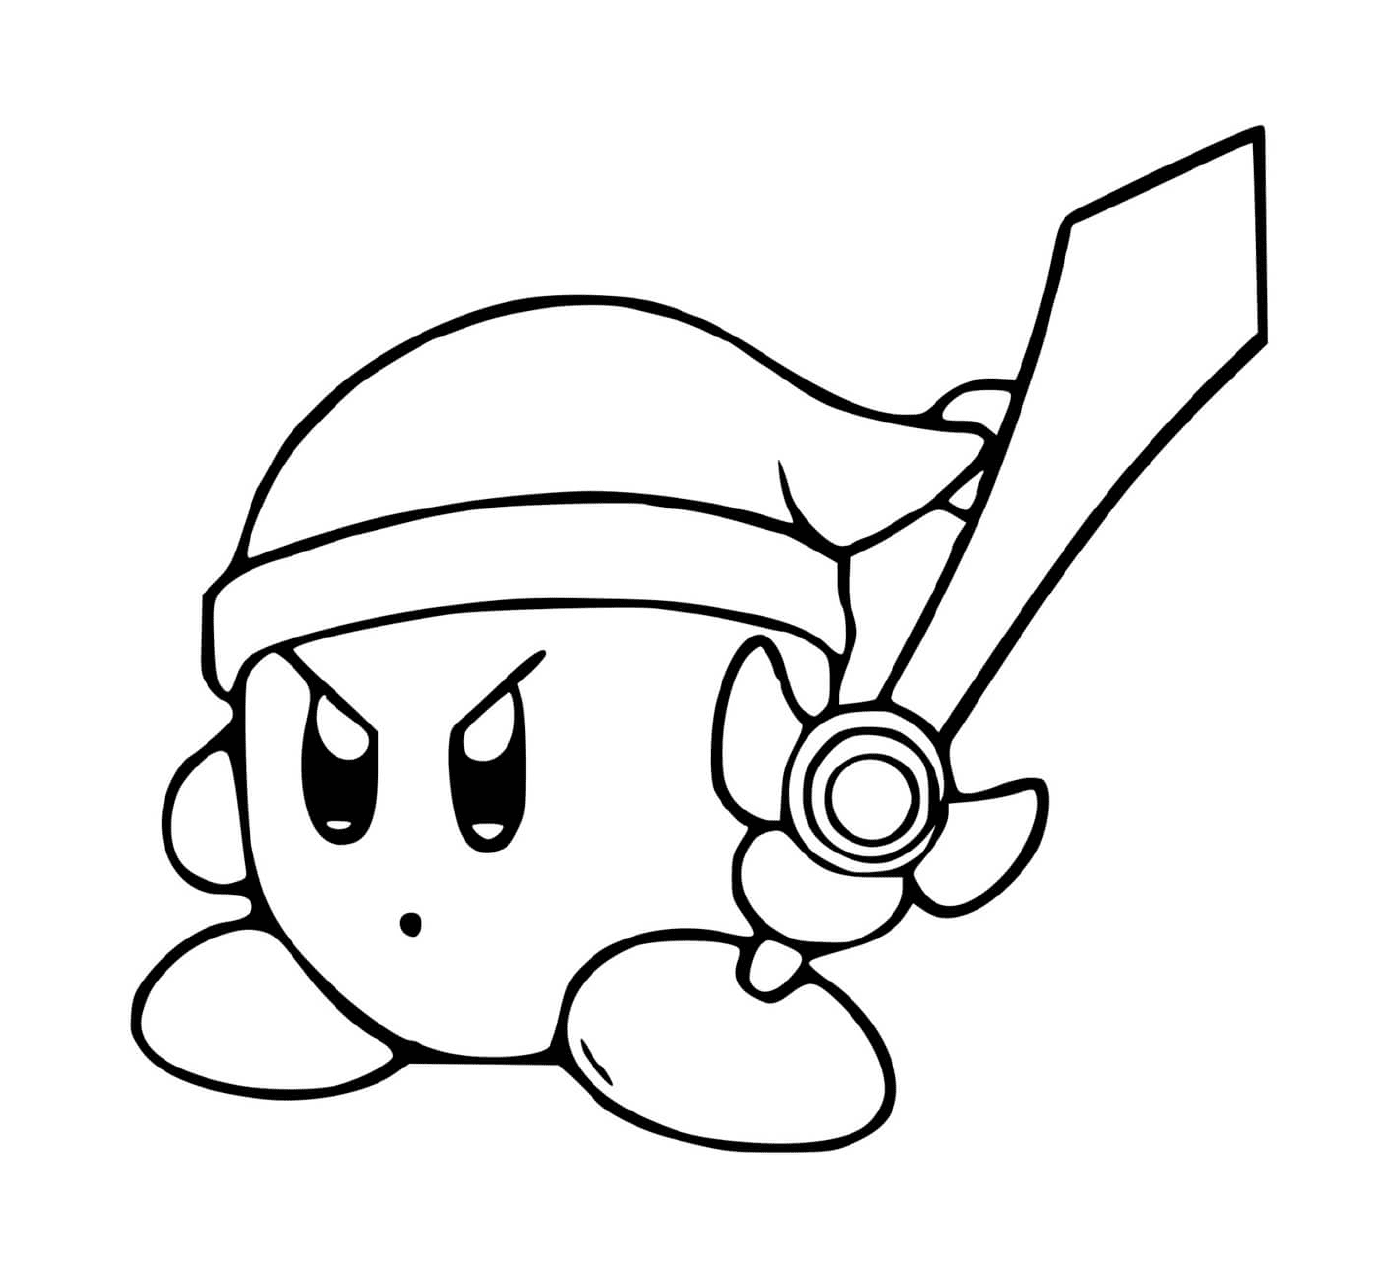  Kirby no modo Zelda com espada 